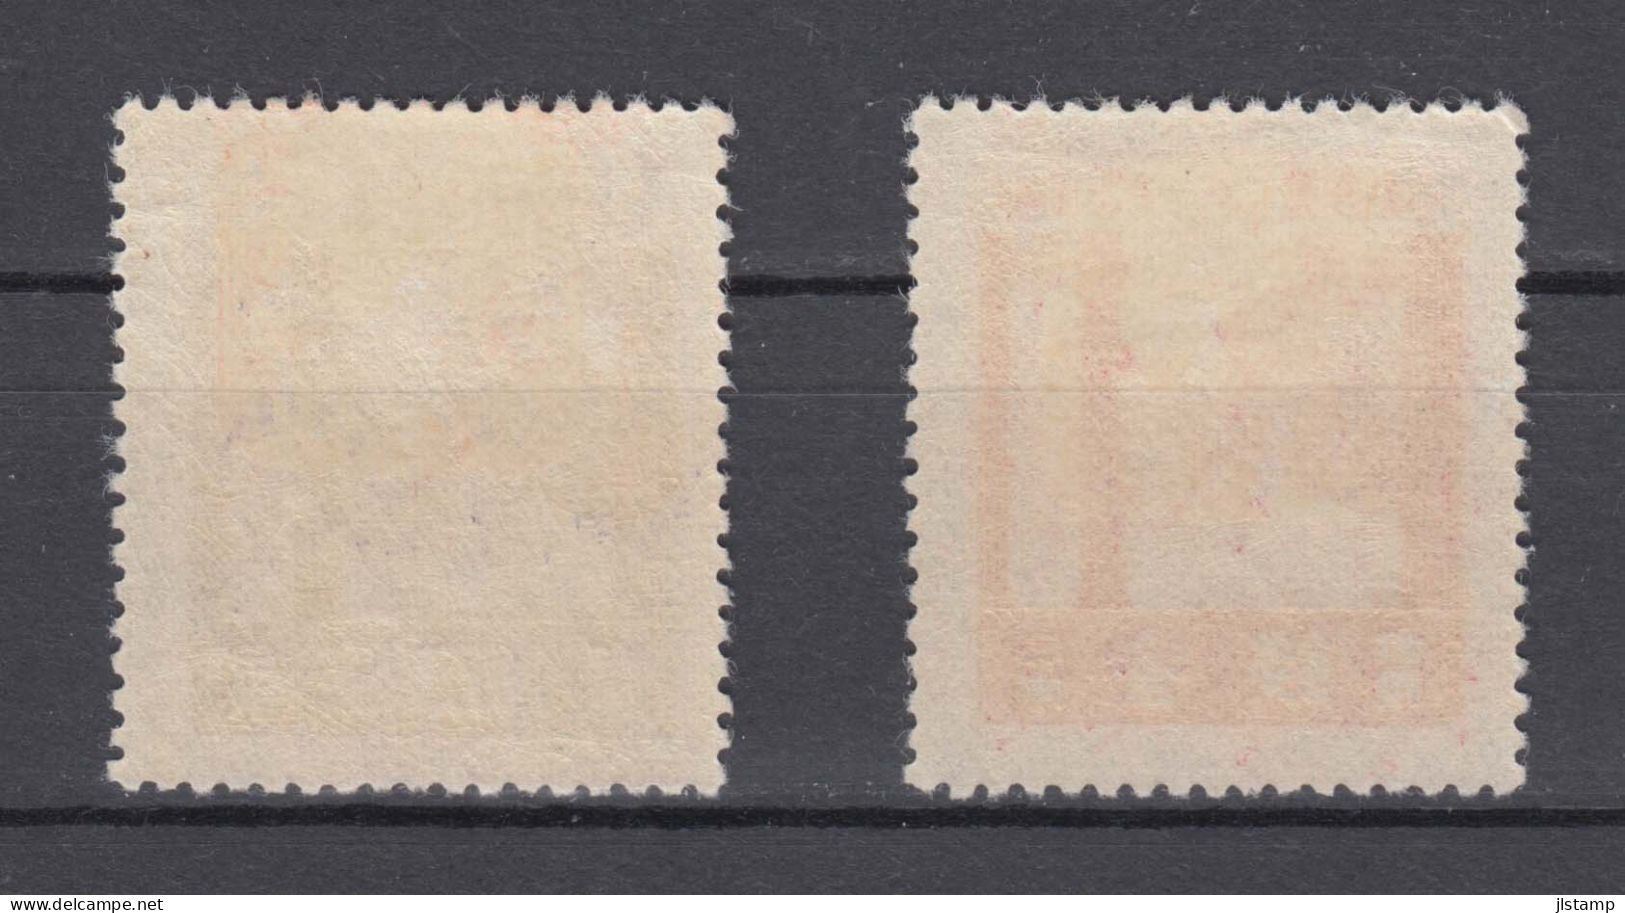 Japan 1929 Ise Shrines Stamps Set Of 2 ,Scott# 206-207,OG MH,VF - Unused Stamps